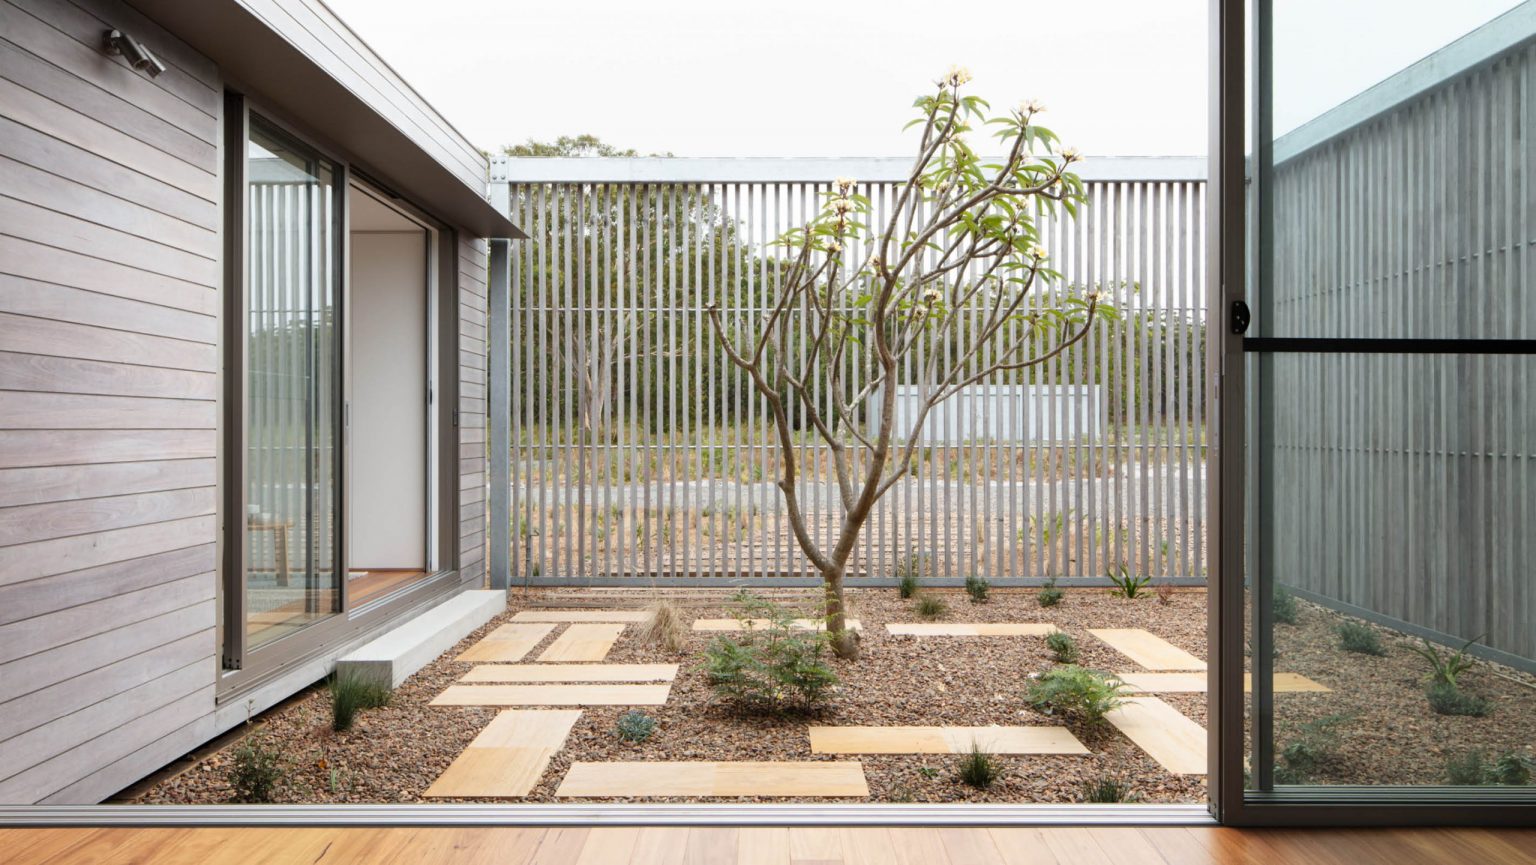 Zen and minimalist gardening